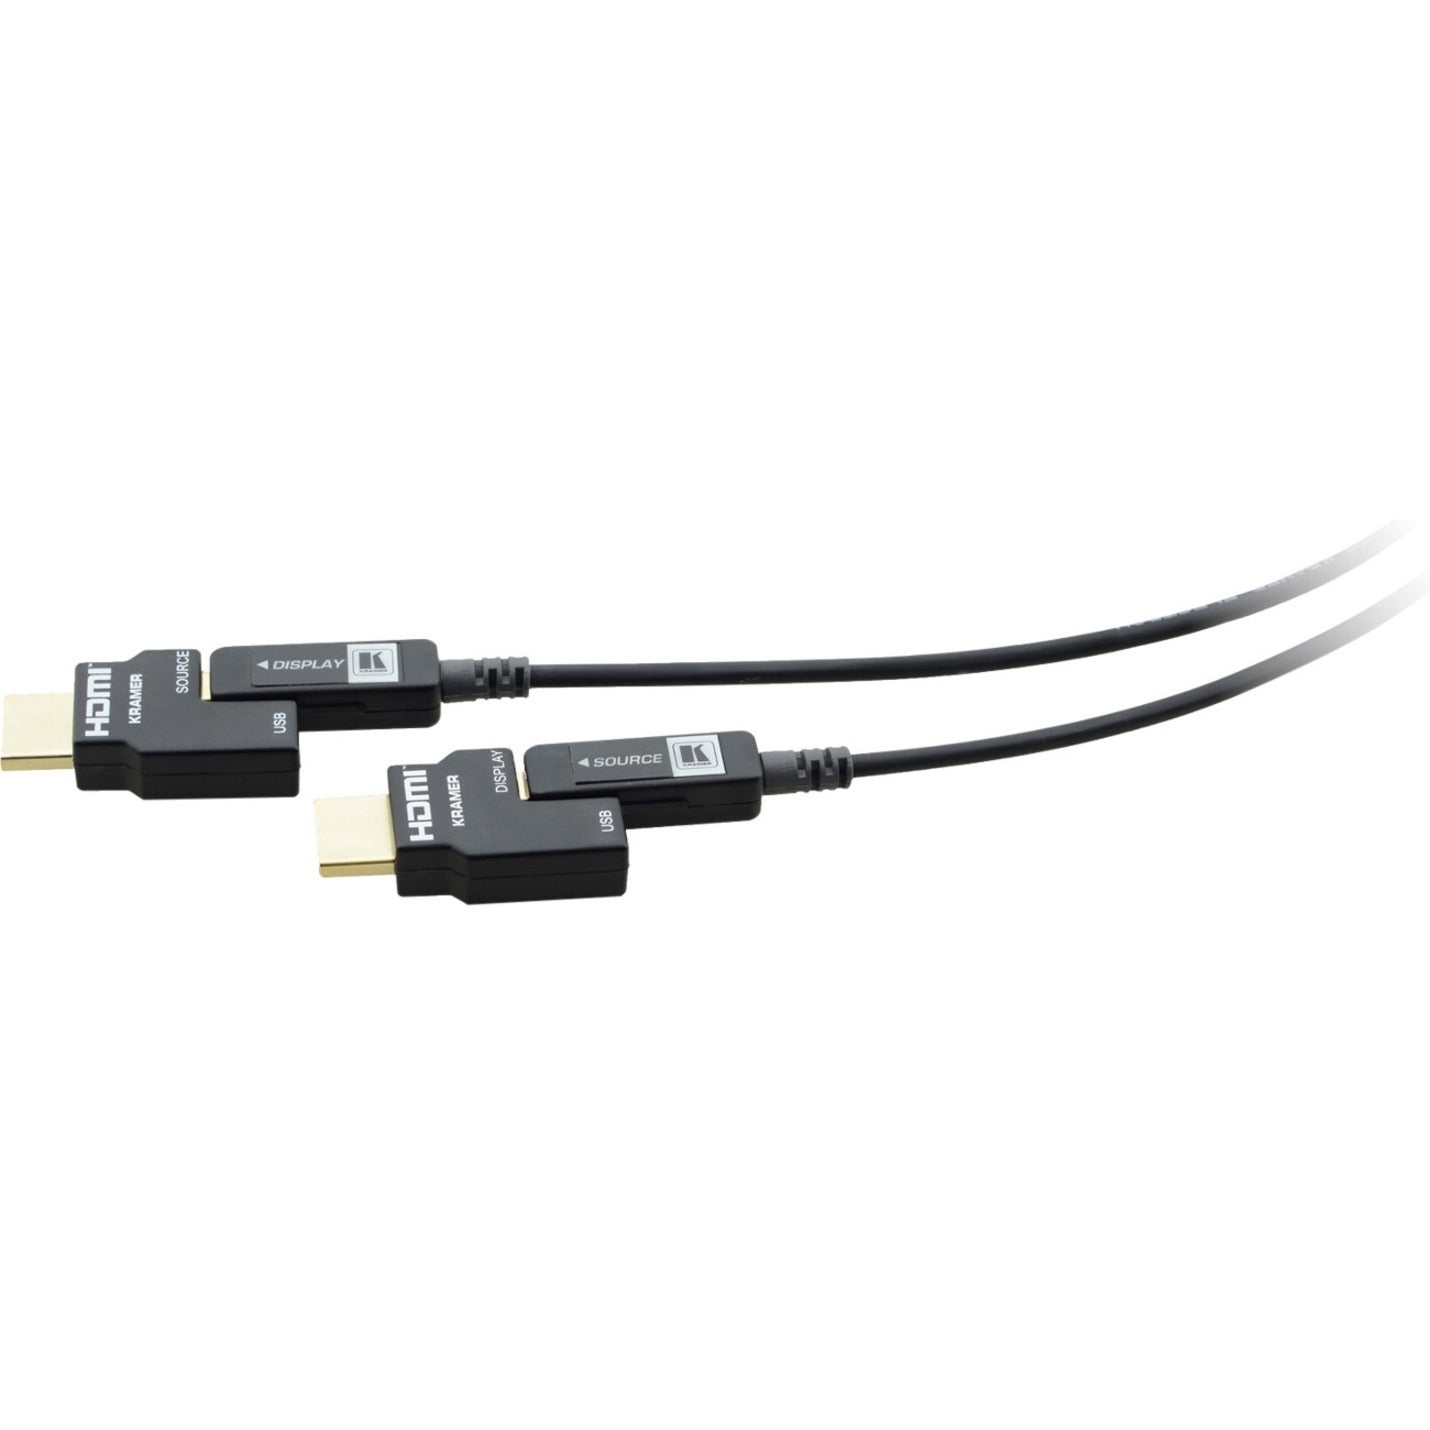 Câble HDMI enfichable optique actif 4K Kramer CP-AOCH/60-98 9843 pi résistant à la corrosion protection EMI/RF certifié RoHS